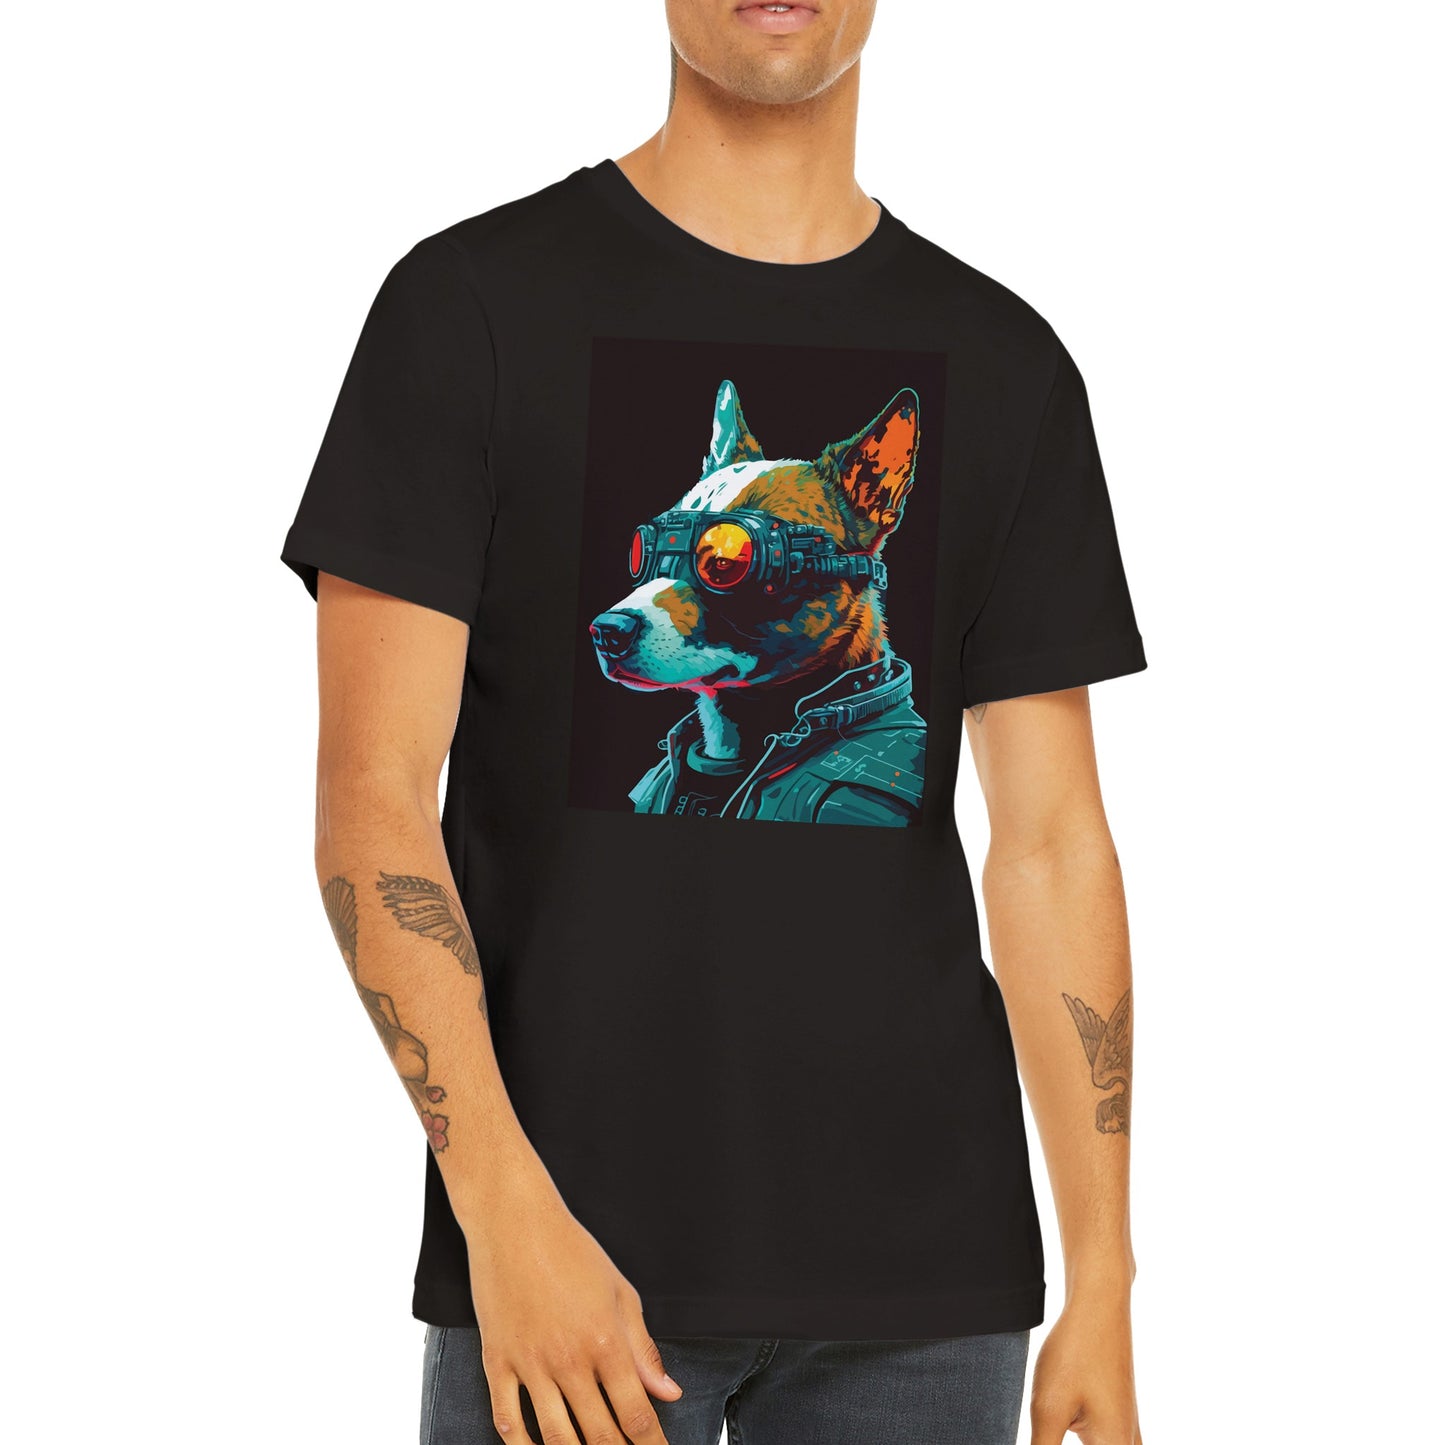 Cyberpunk dog T-shirt